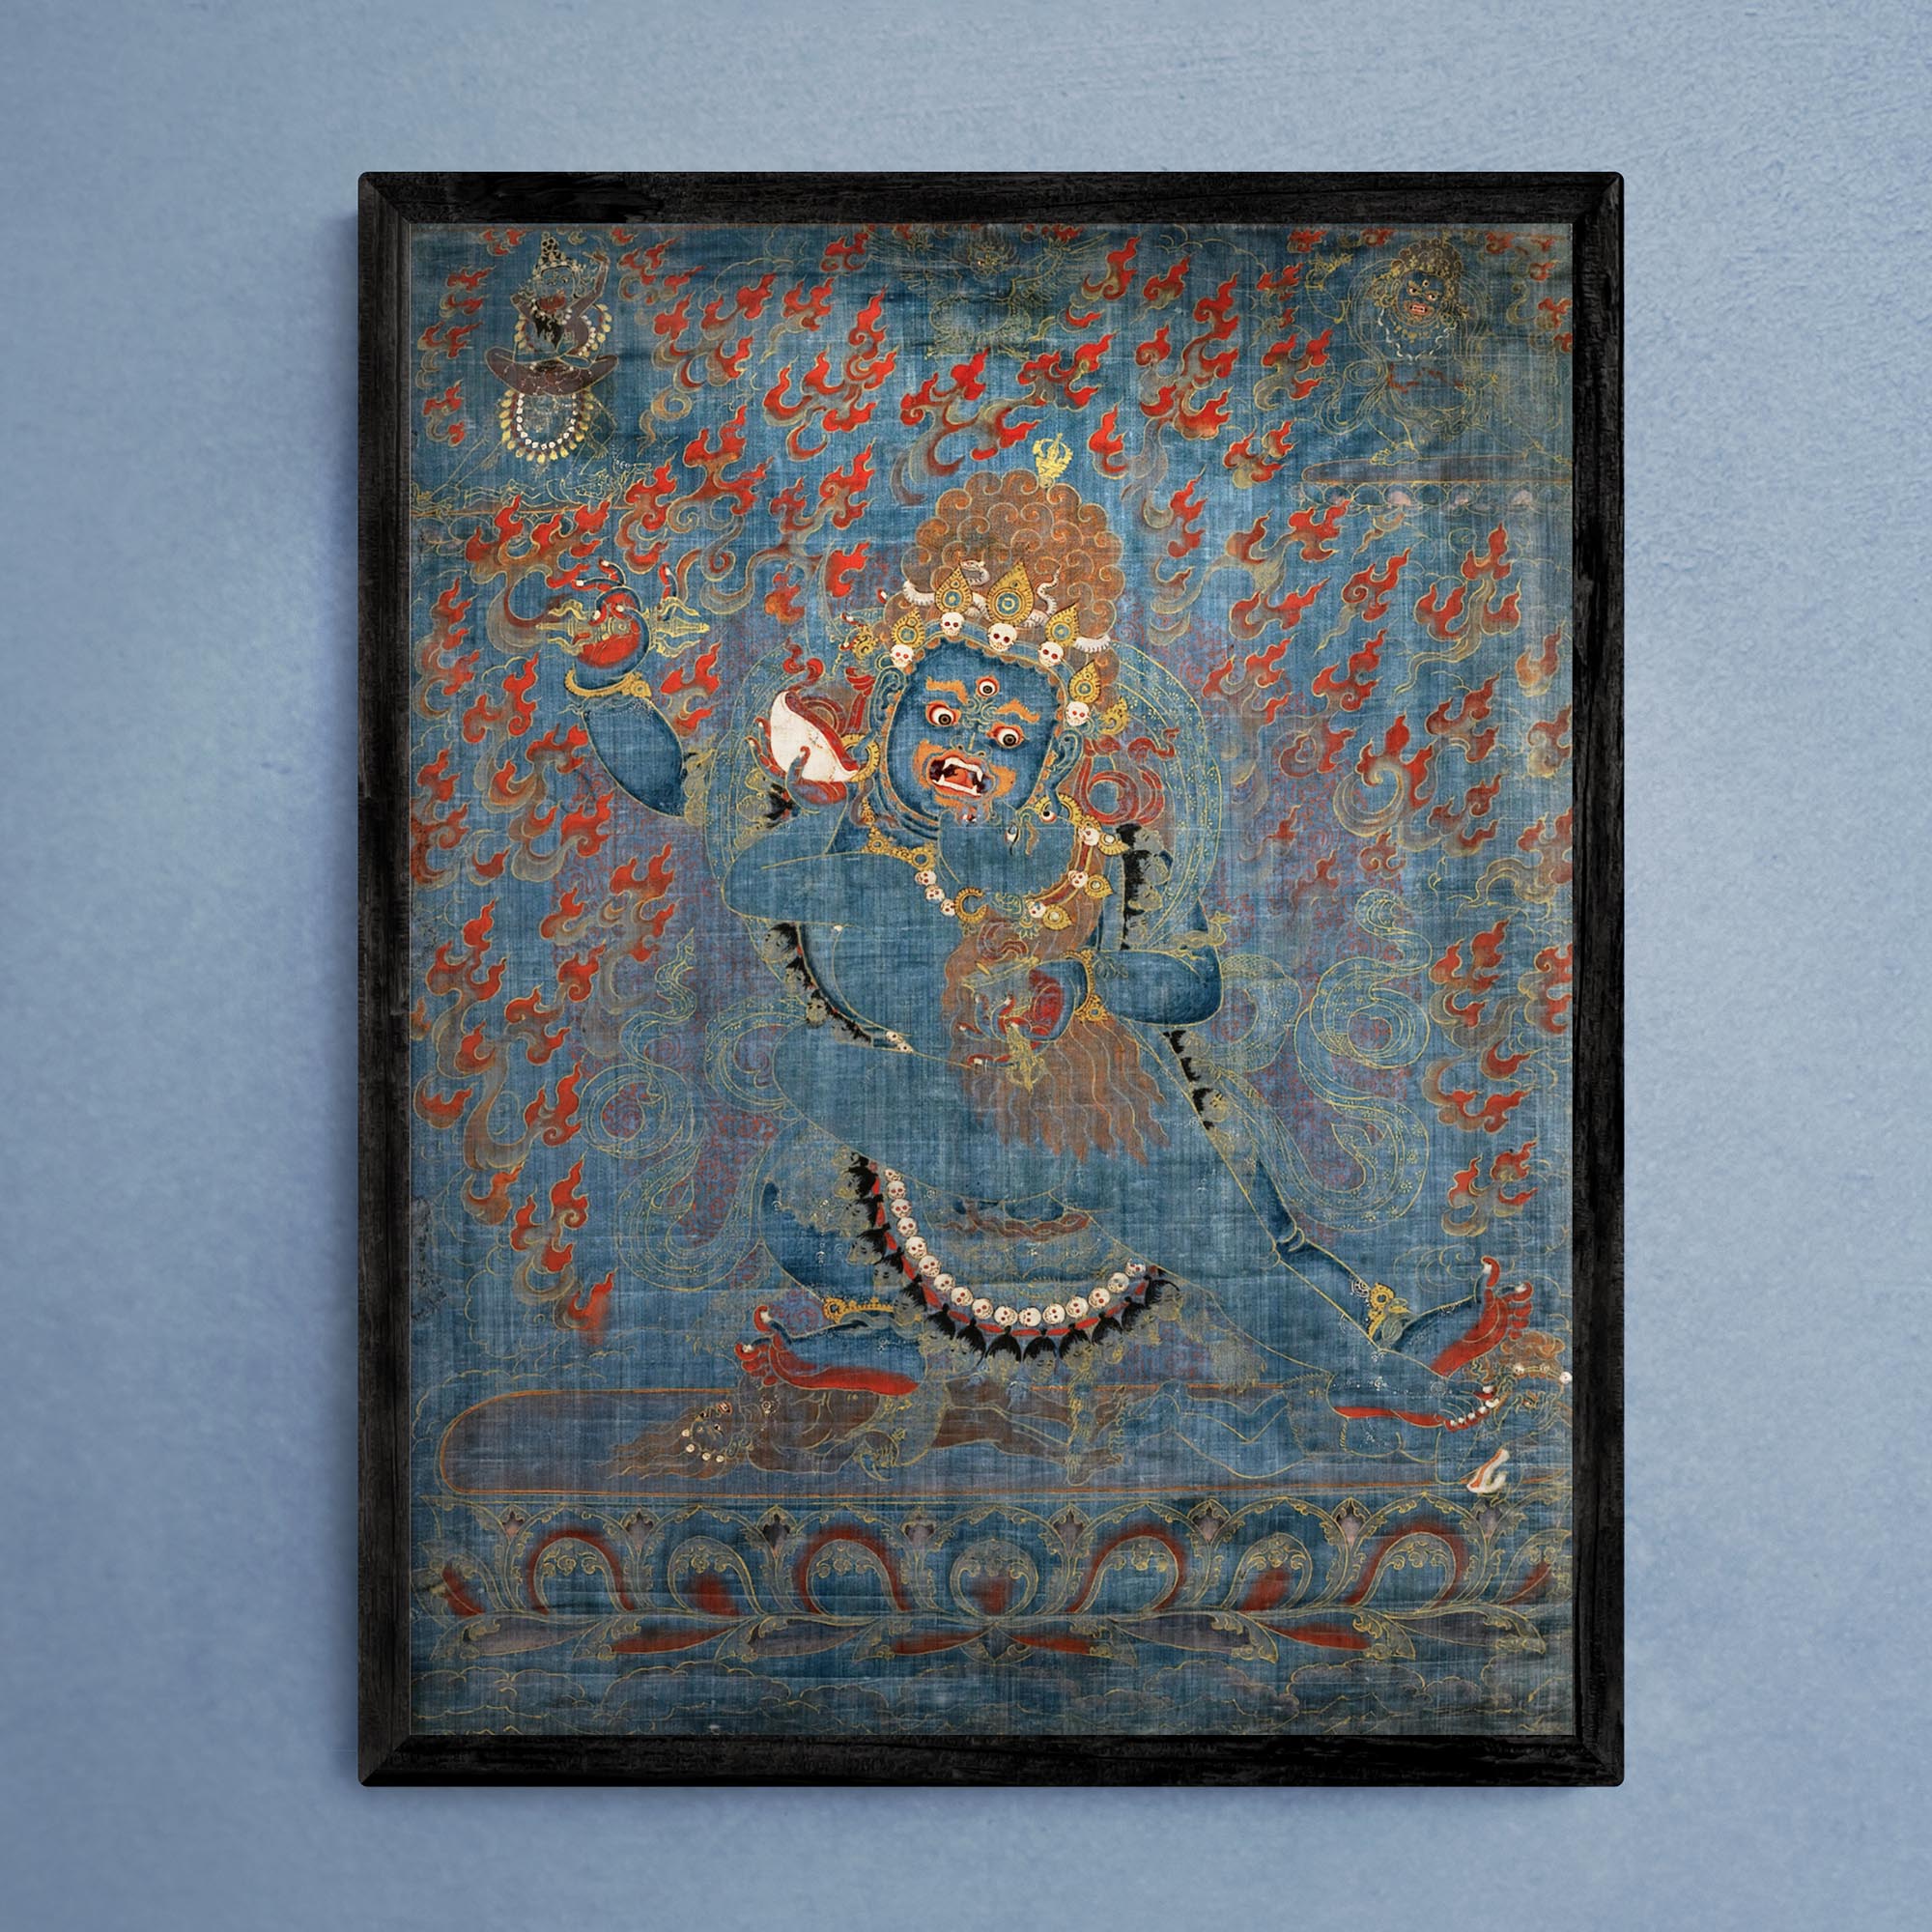 Framed Print 6"x8" / Black Frame Framed Vajrapani and Consort, Tibetan, 15th-16th Century Antique Vintage Gift | Buddhist Protector Deity Thangka Boho Decor Framed Art Print